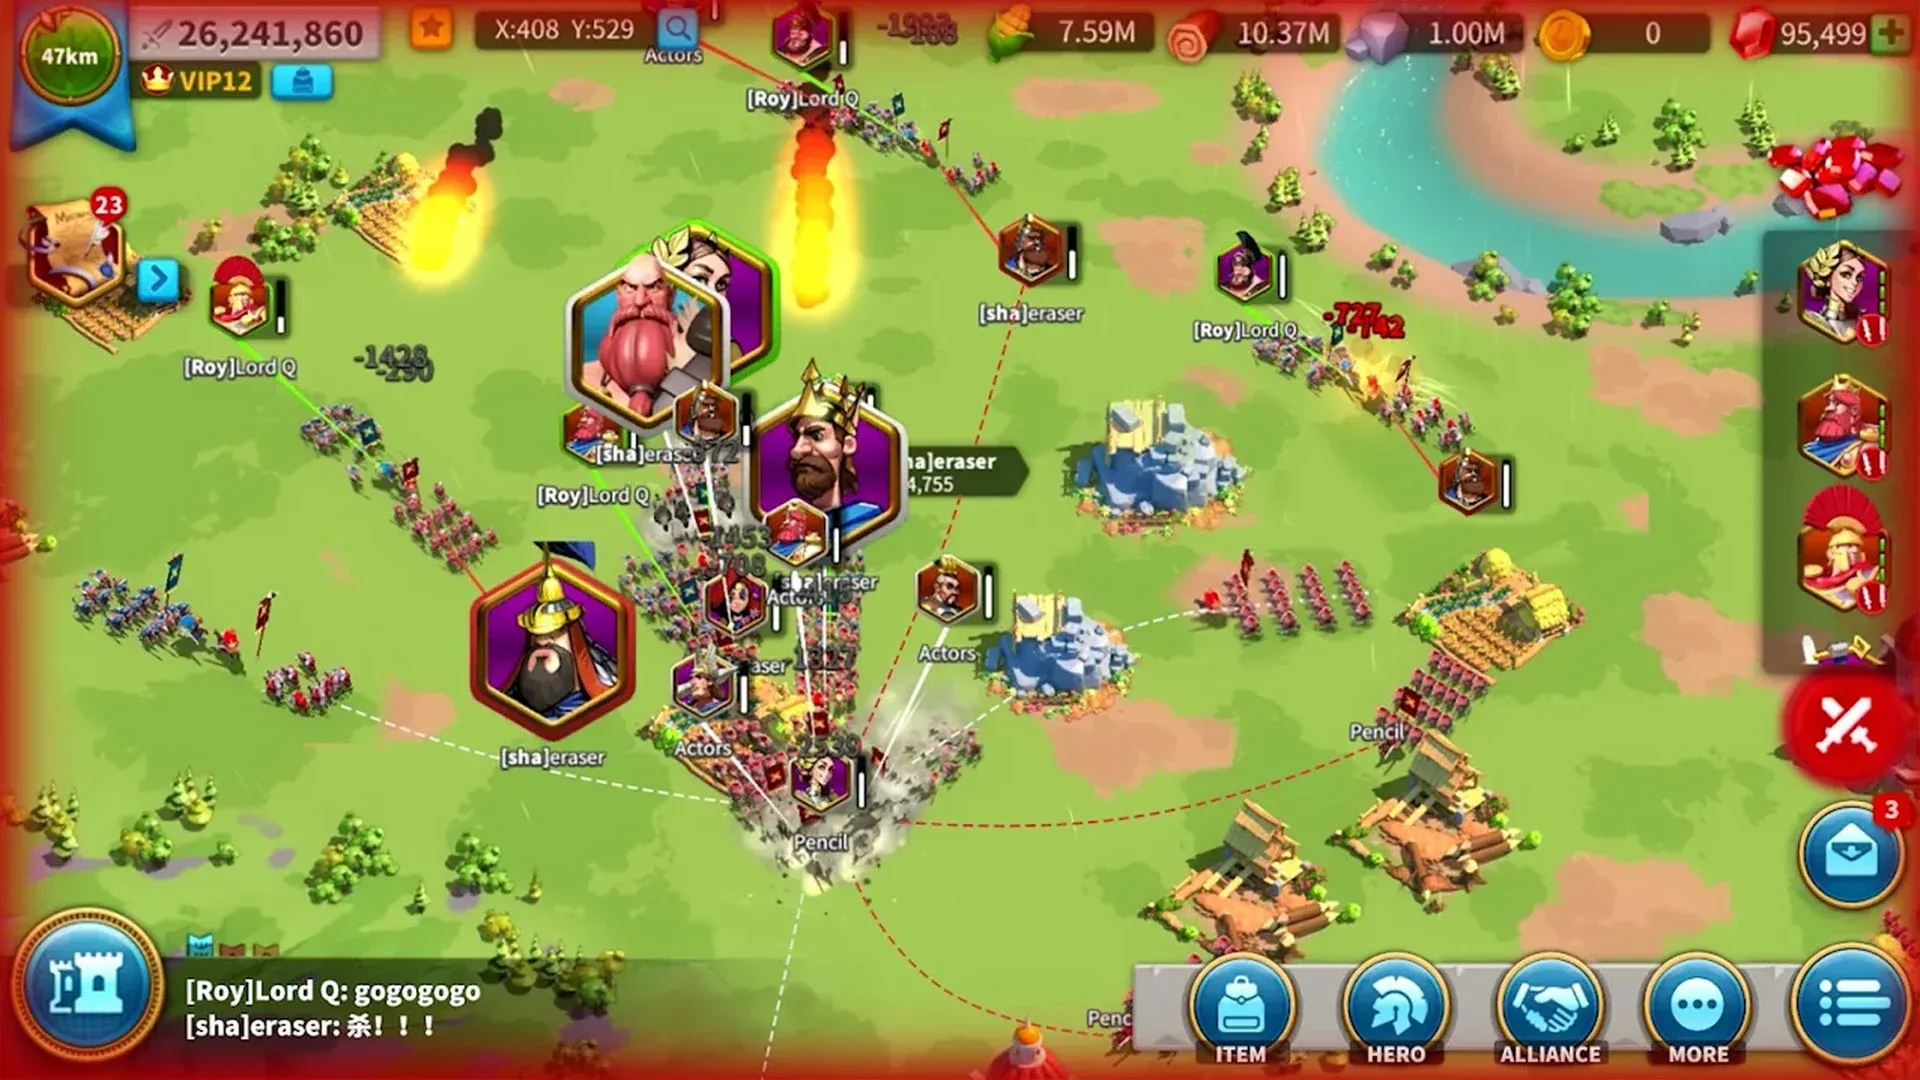 Imagem do jogo Rise of Kingdoms mostrando uma batalha em larga escala entre exércitos, simbolizados por unidades e fotos de seus líderes em meio a um campo verde